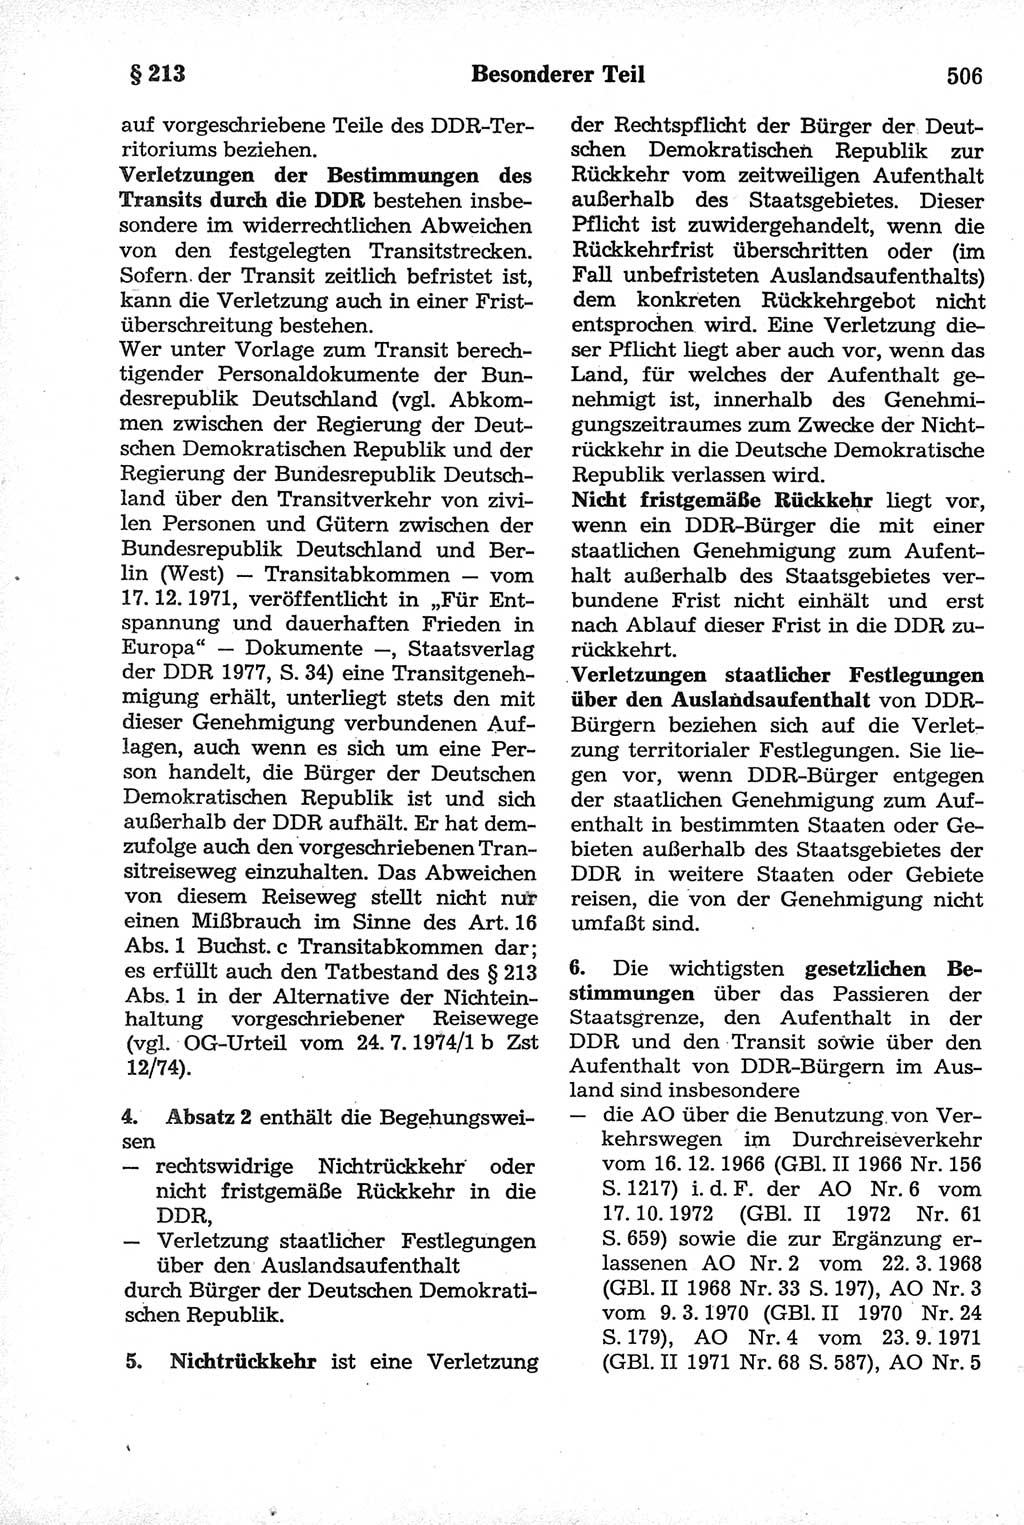 Strafrecht der Deutschen Demokratischen Republik (DDR), Kommentar zum Strafgesetzbuch (StGB) 1981, Seite 506 (Strafr. DDR Komm. StGB 1981, S. 506)